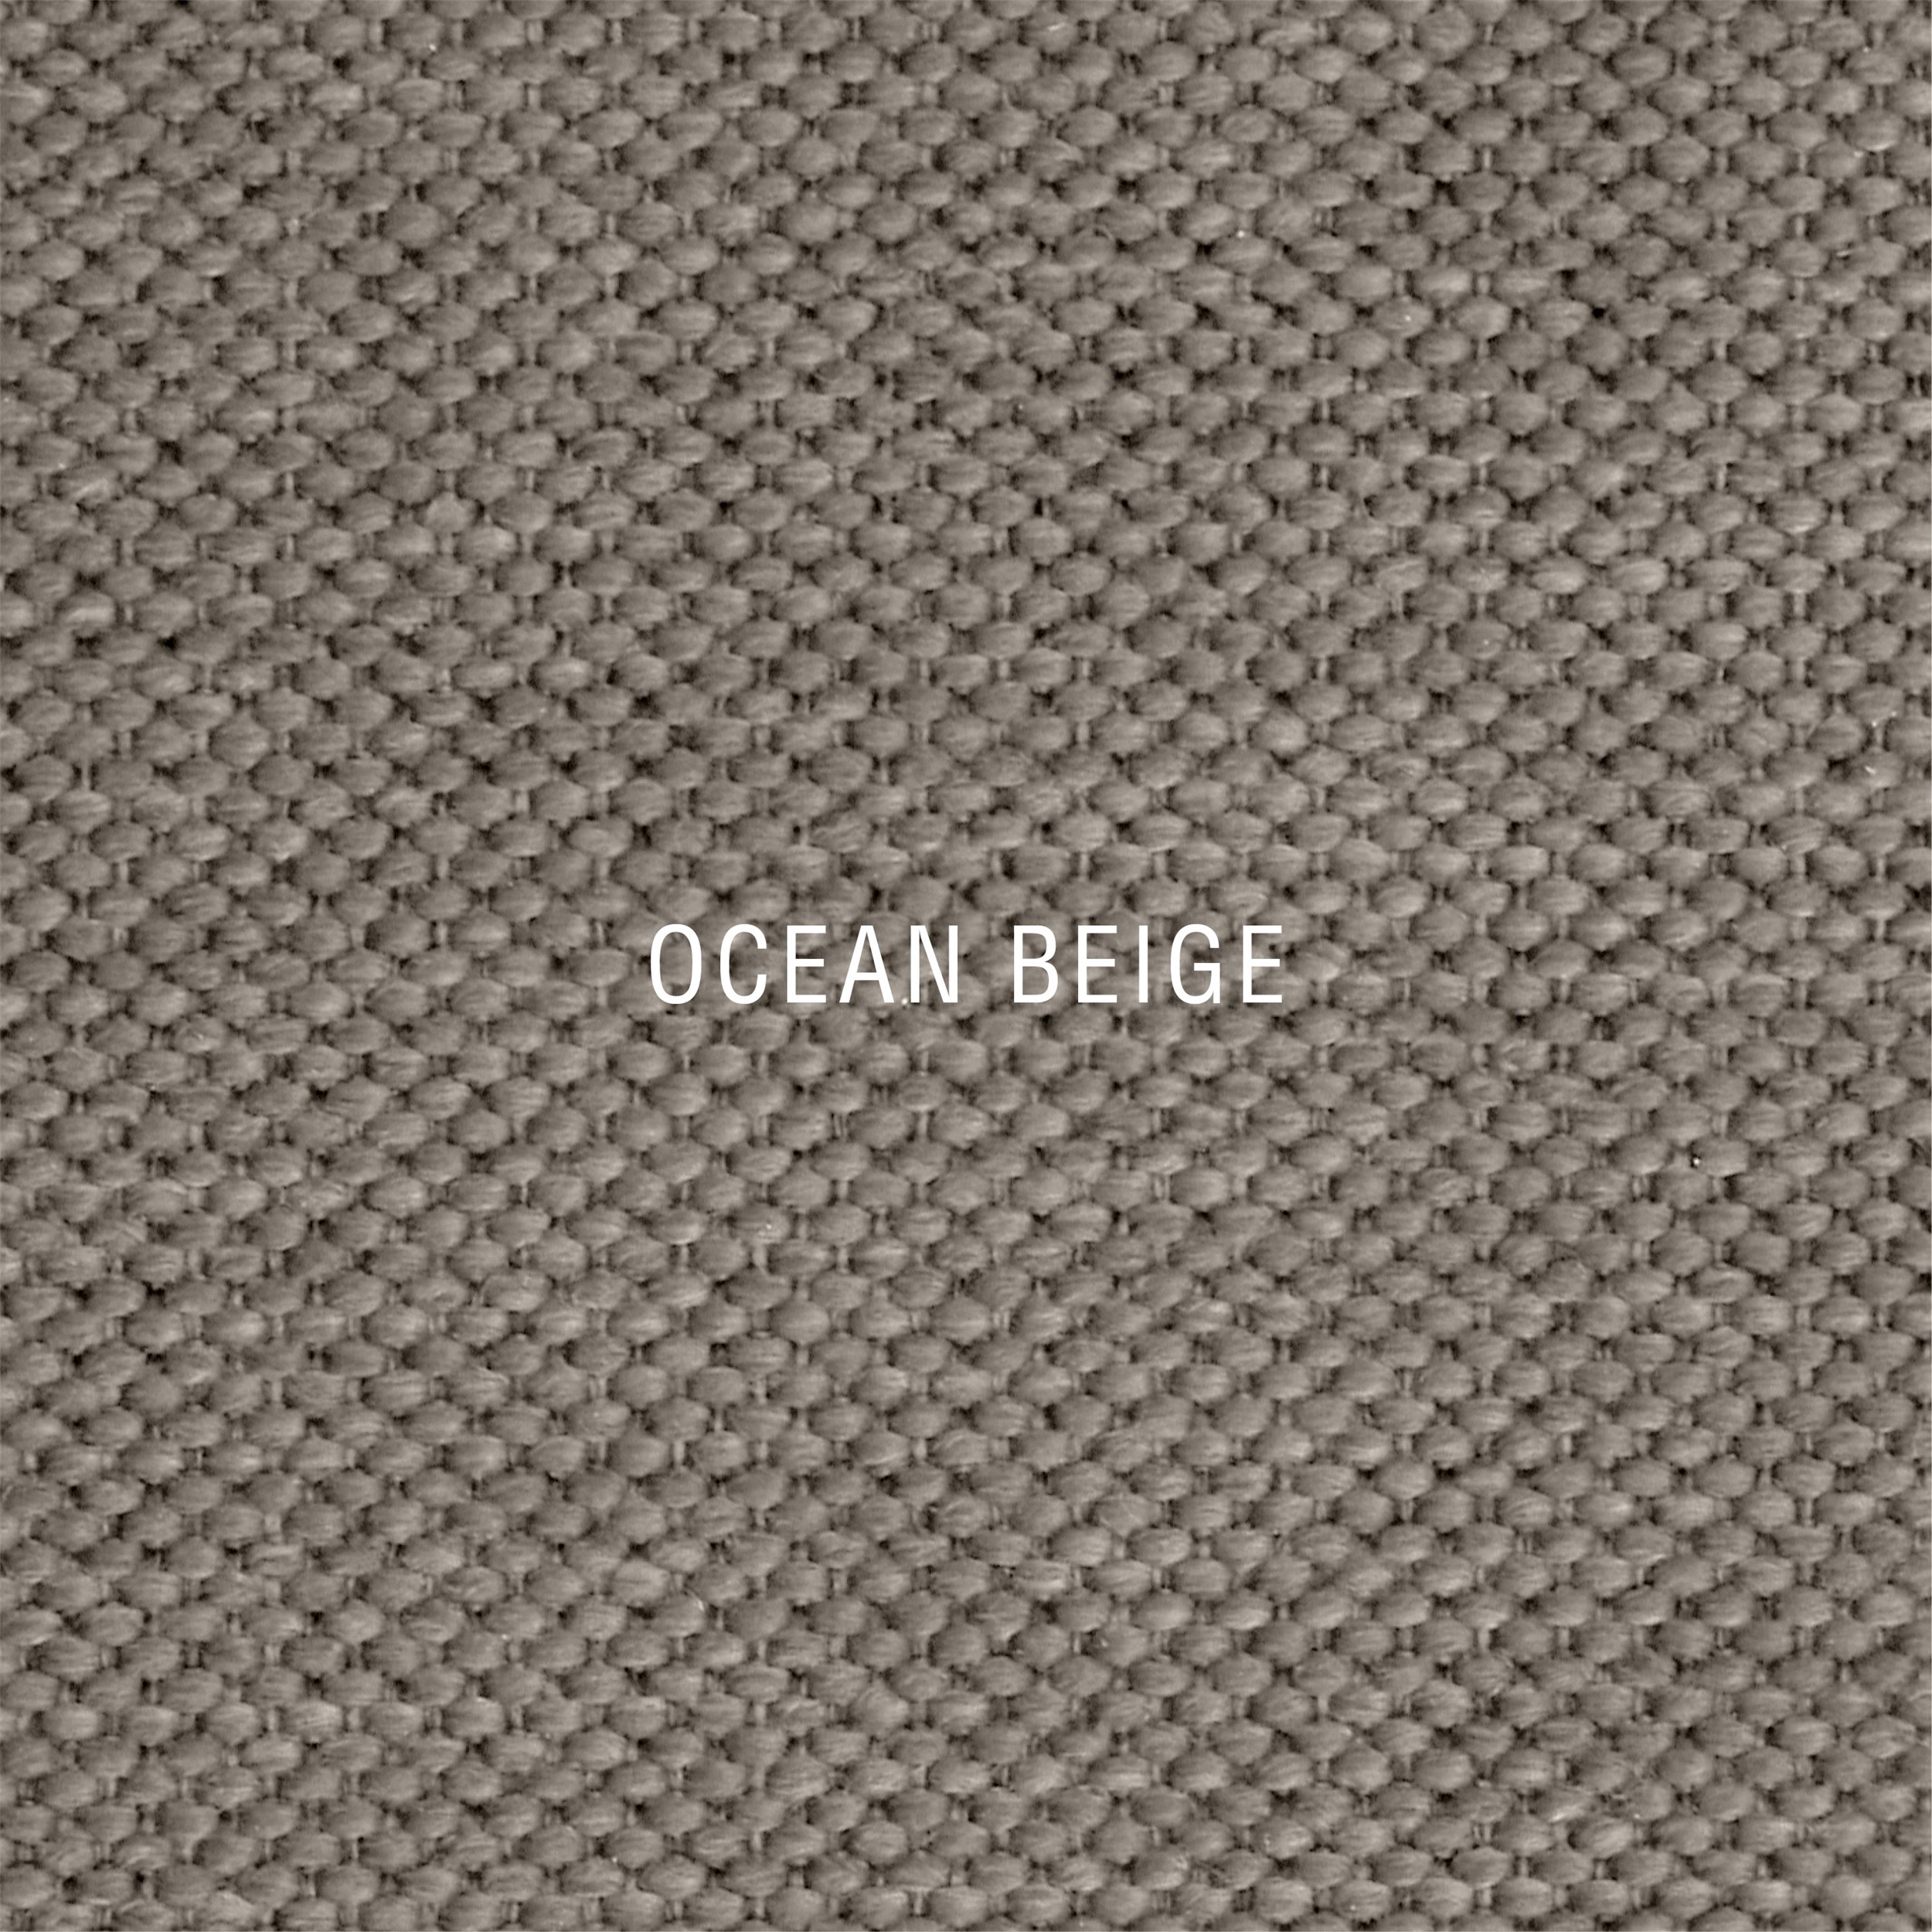 Nocturne Exclusive Ocean inkl. 6 cm Exclusive topmadras, 180 x 200 cm kontinentalseng